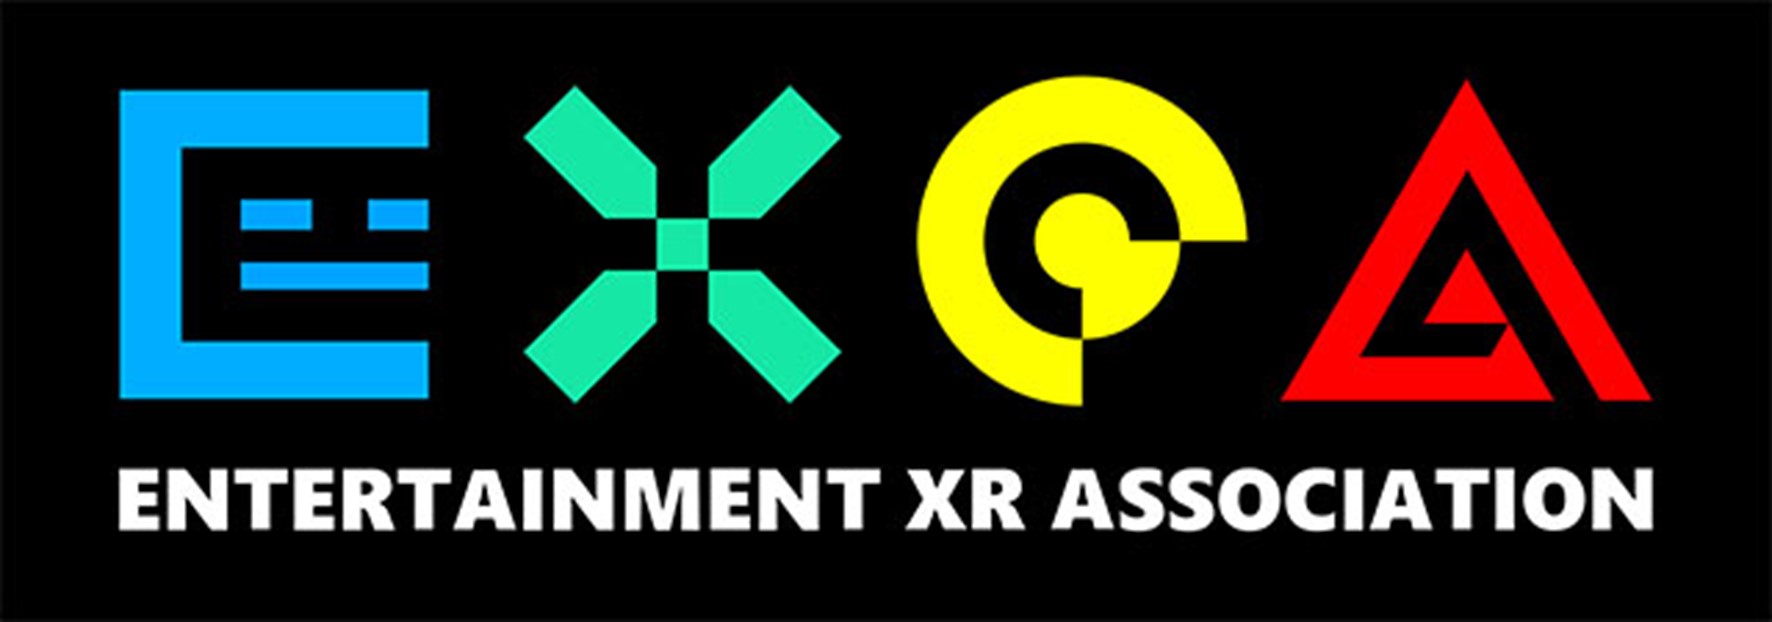 エンターテイメントXR協会ロゴ